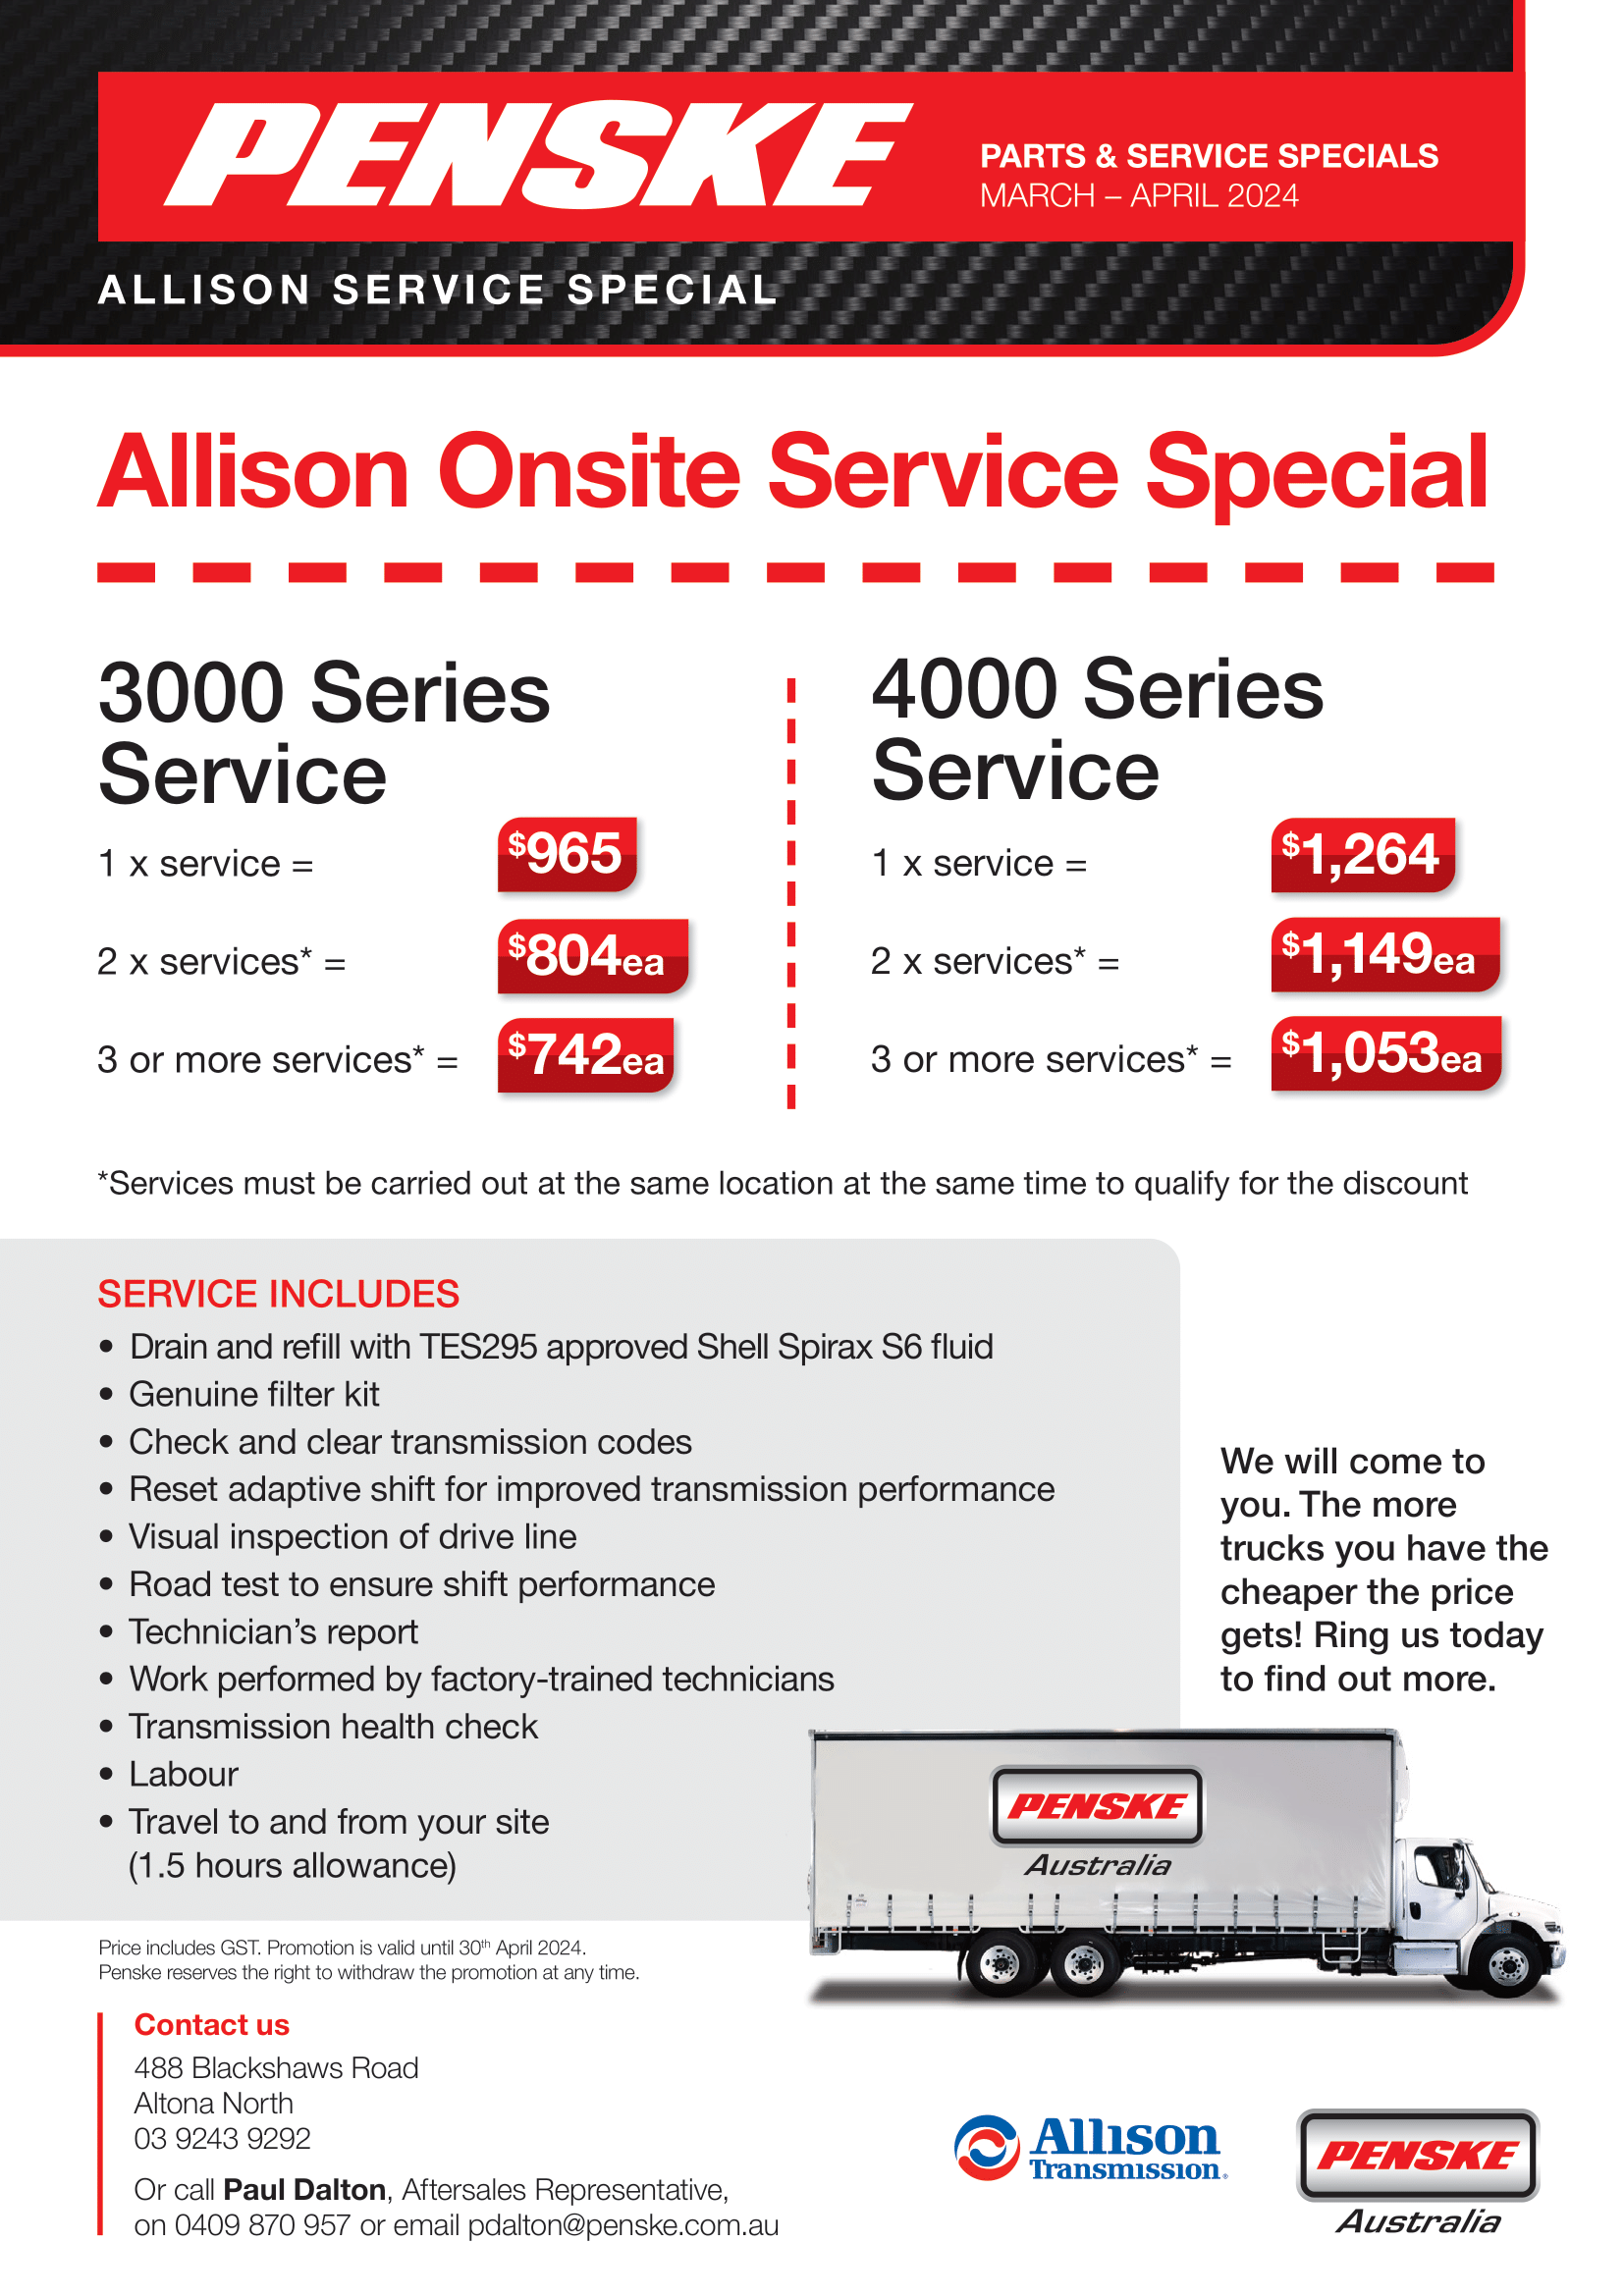 Allison Service Promotion